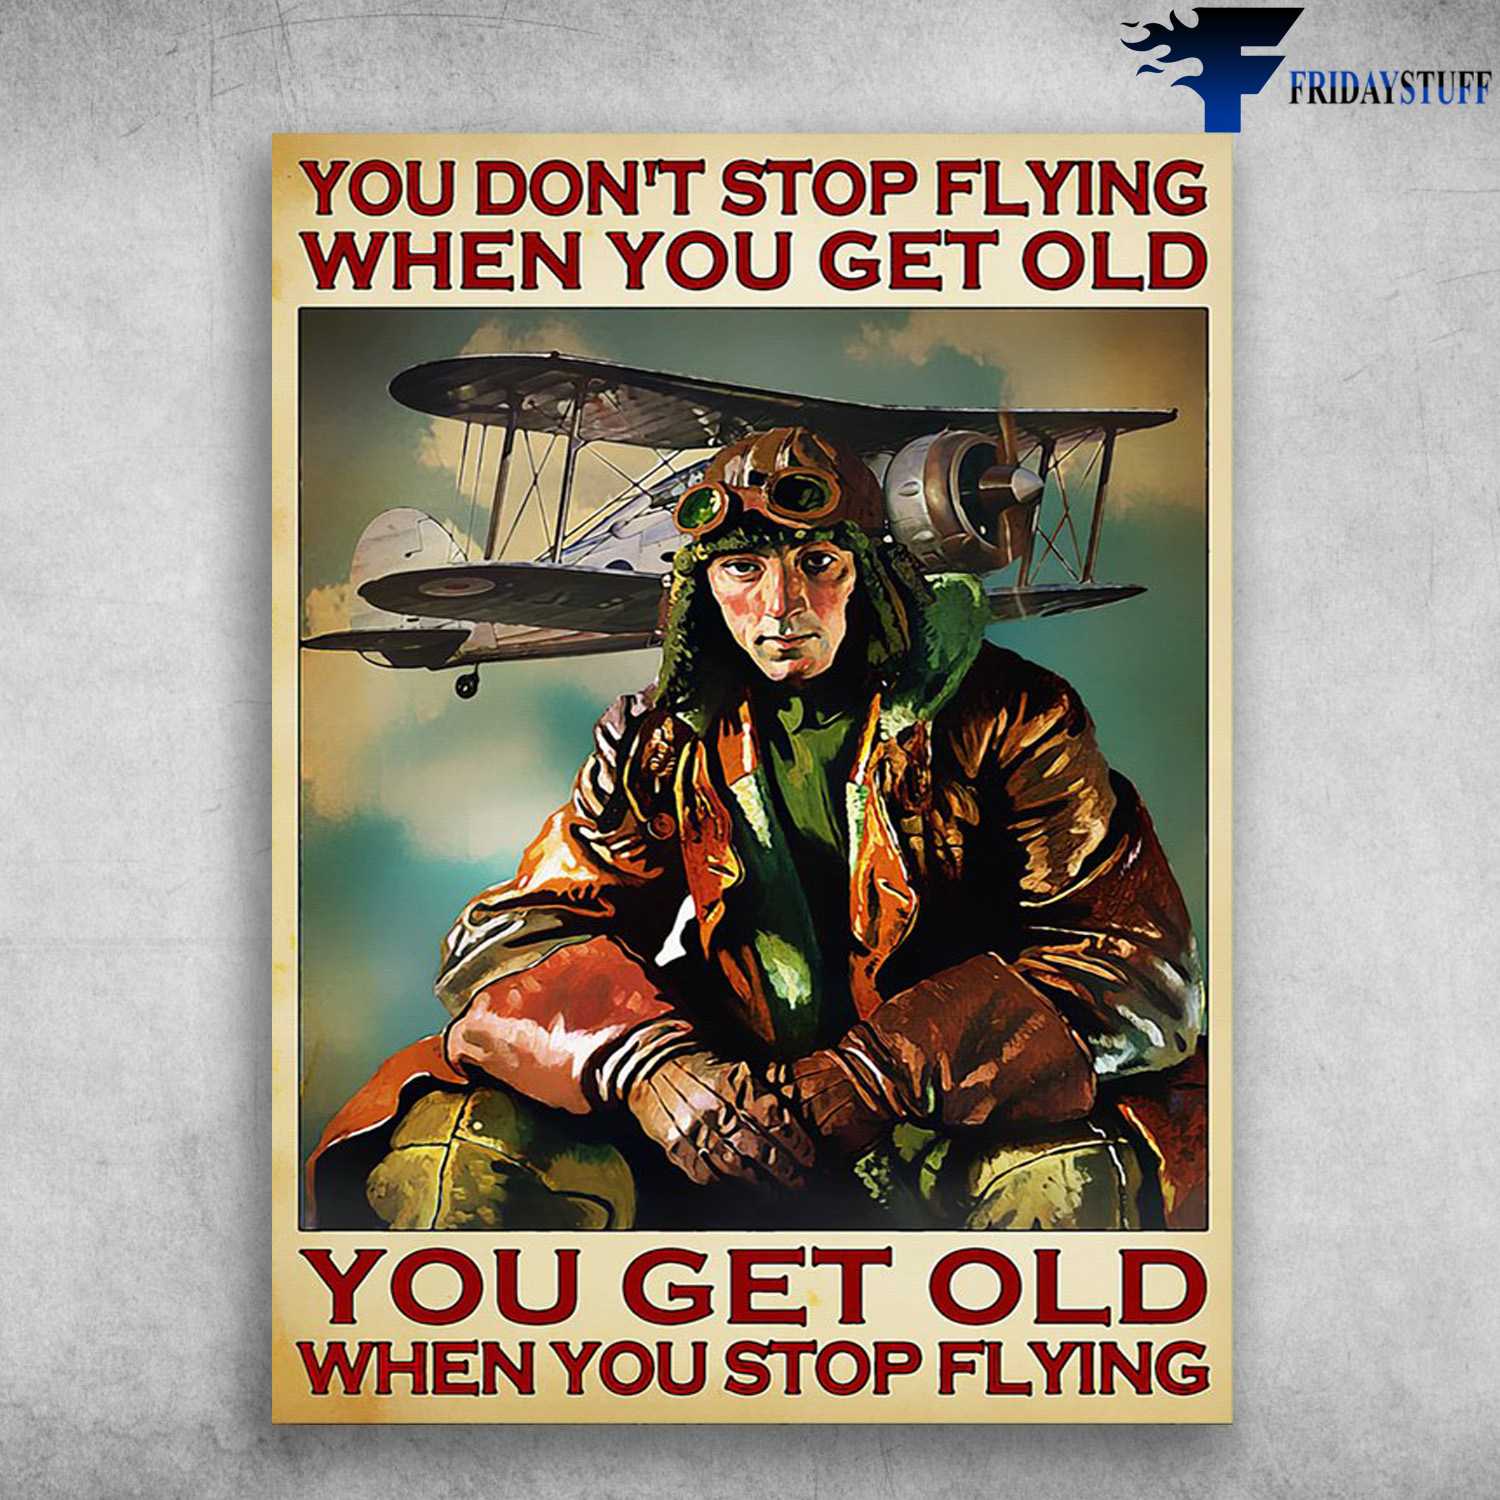 Pilot Aircraft, Pilot Poster - You Don't Stop Flying When You Get Old, You Get Old When You Stop Flying